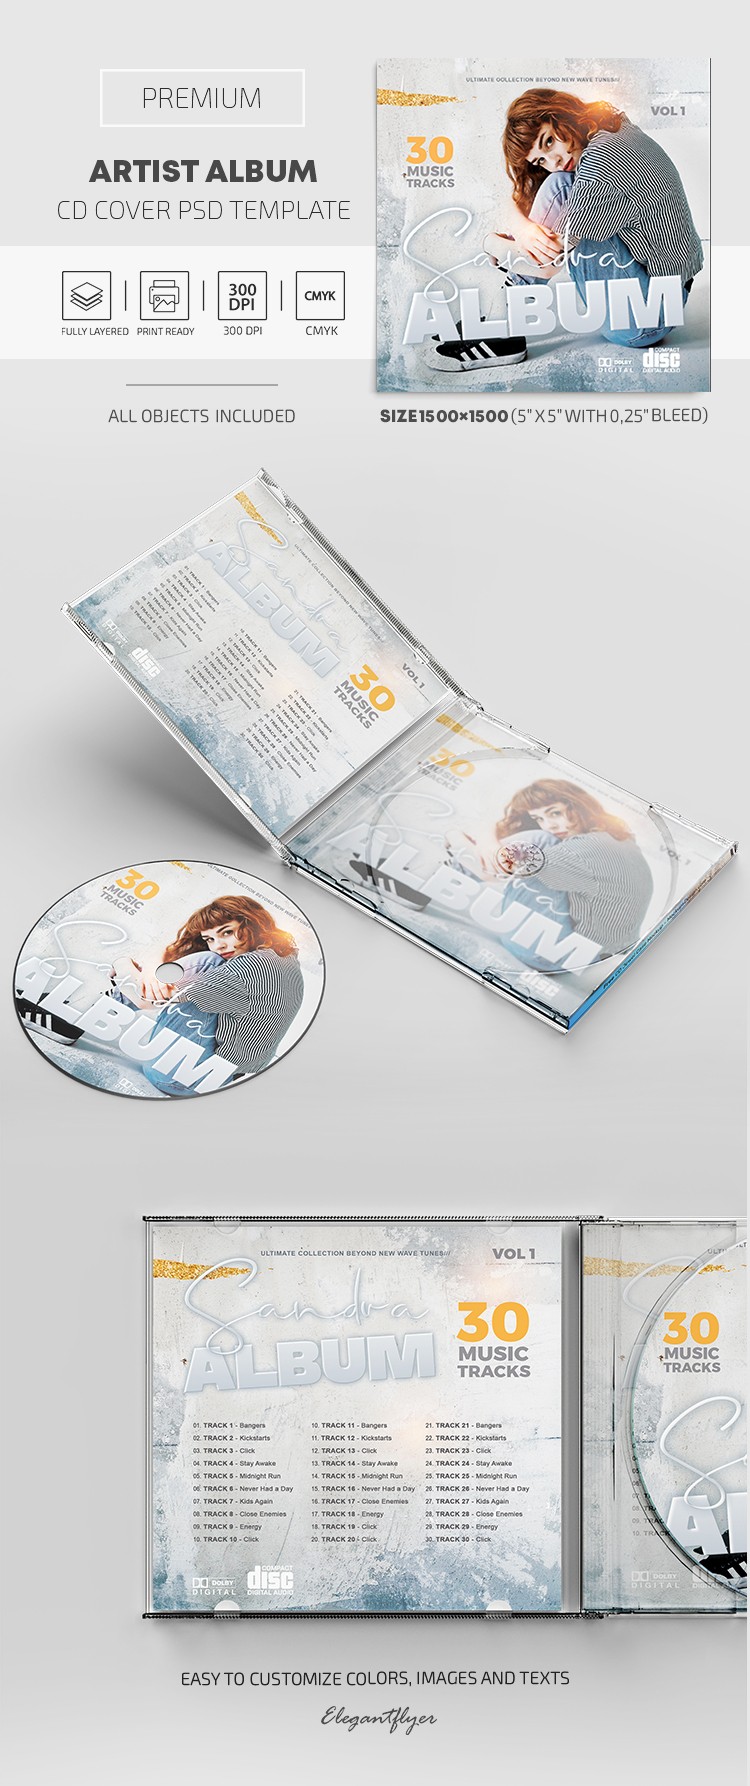 艺术家专辑CD封面 by ElegantFlyer